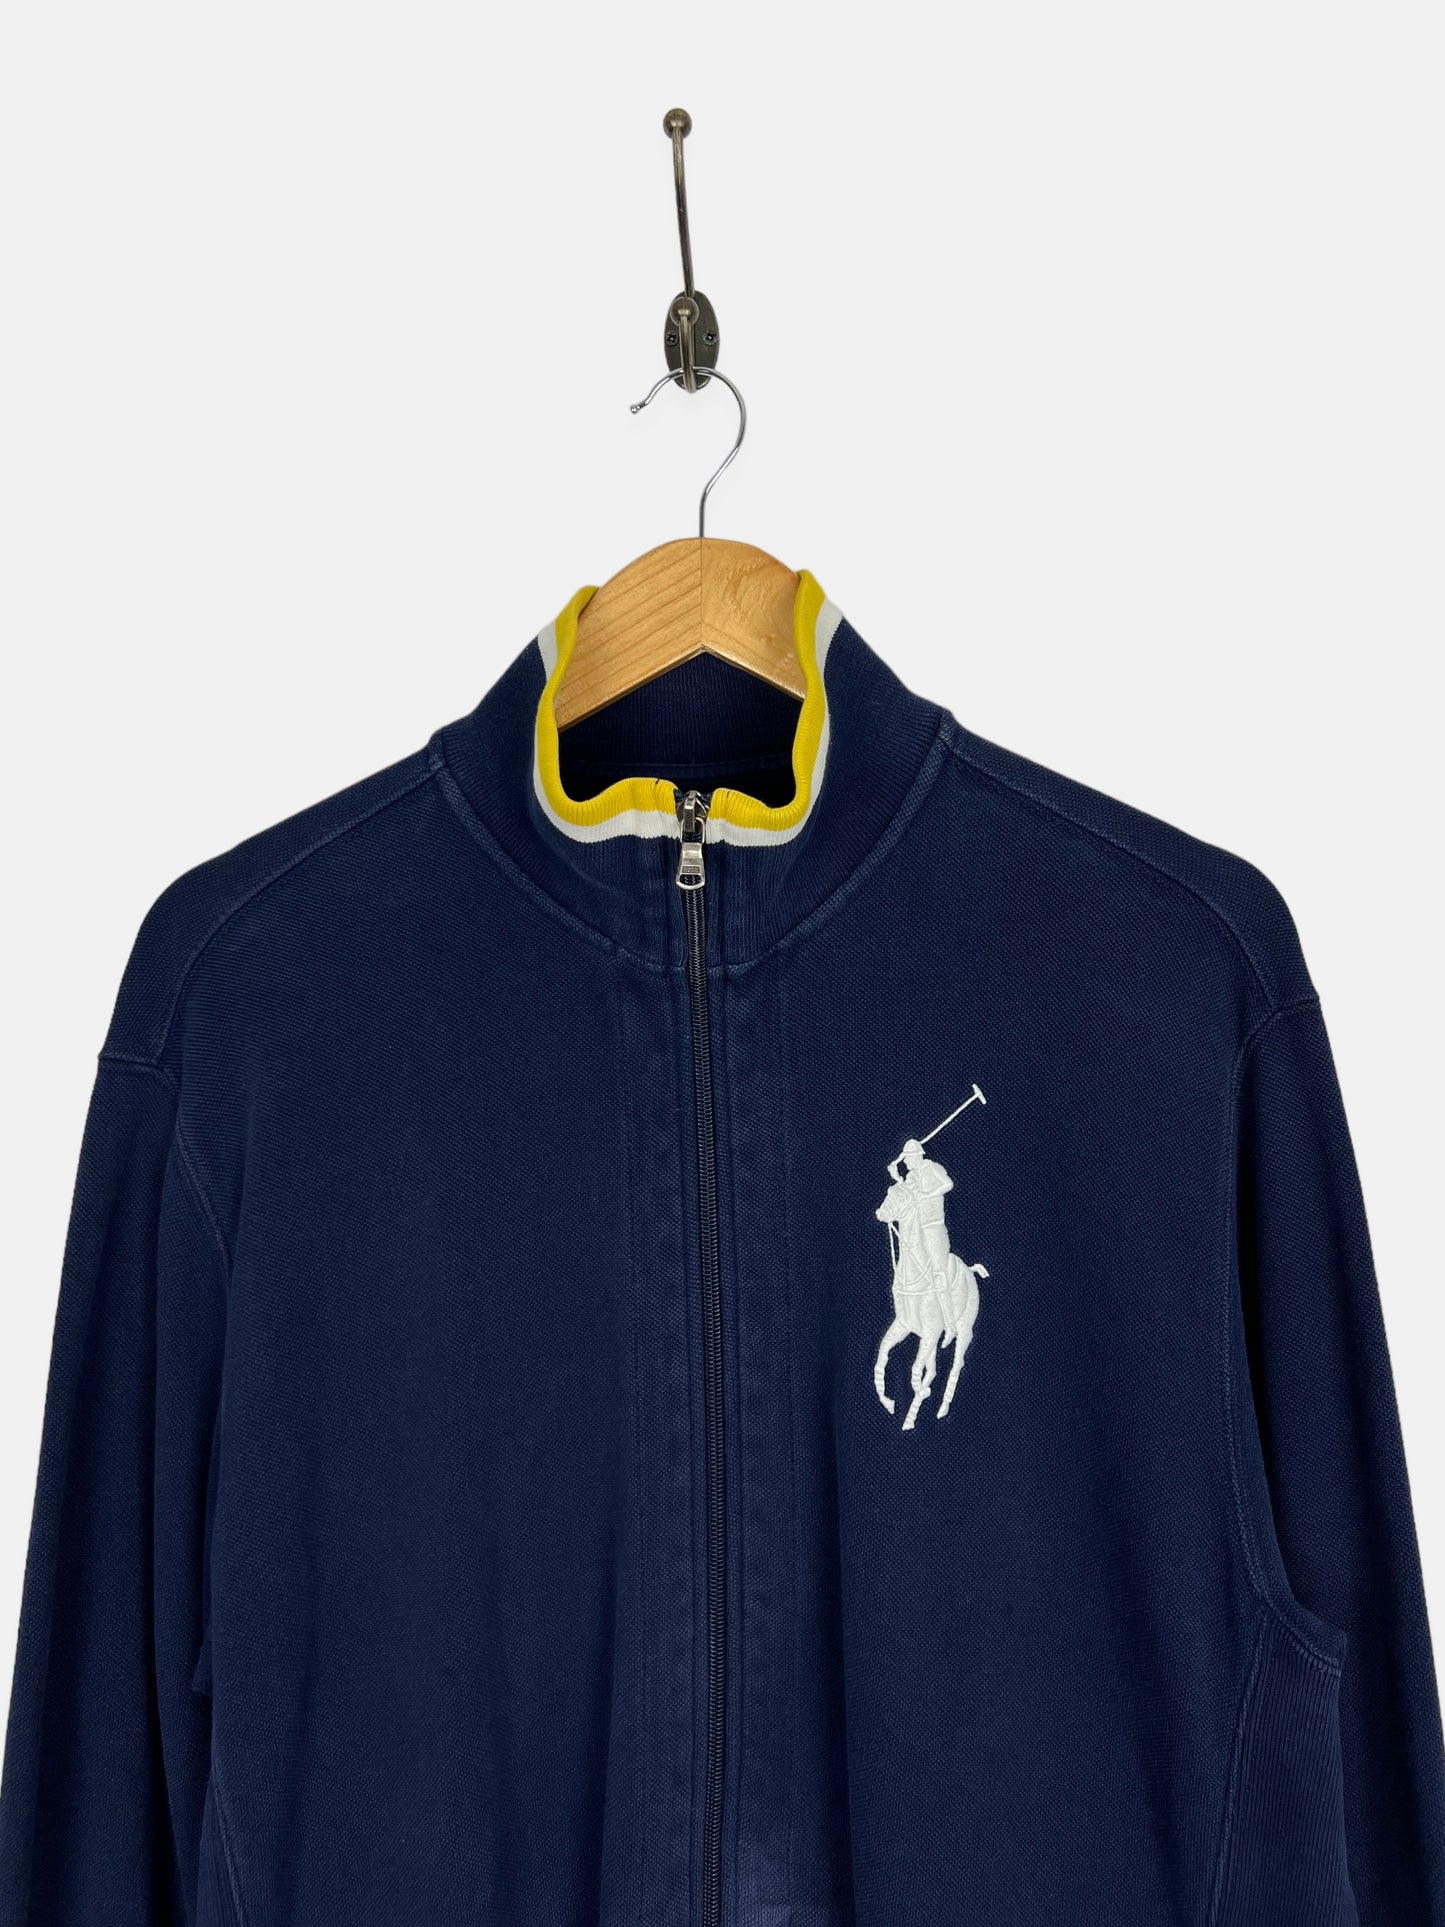 90's Ralph Lauren Embroidered Vintage Zip-Up Sweatshirt/Jacket Size M